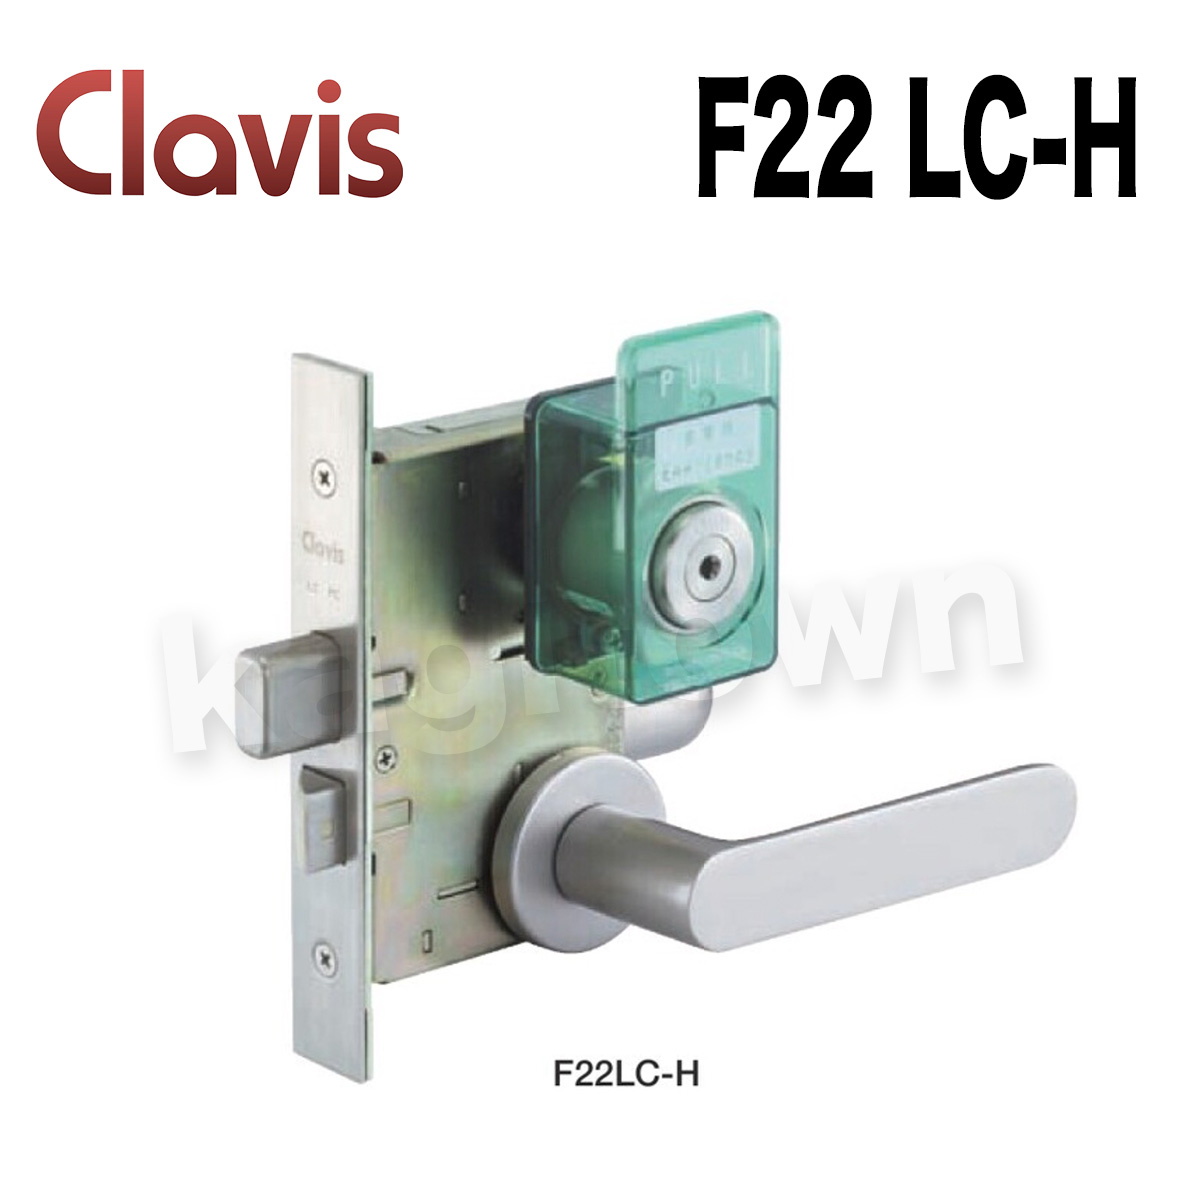 Clavis F22 LC-H【クラビス】レバーハンドル錠 納期1~3週間 非常開付シリンダー